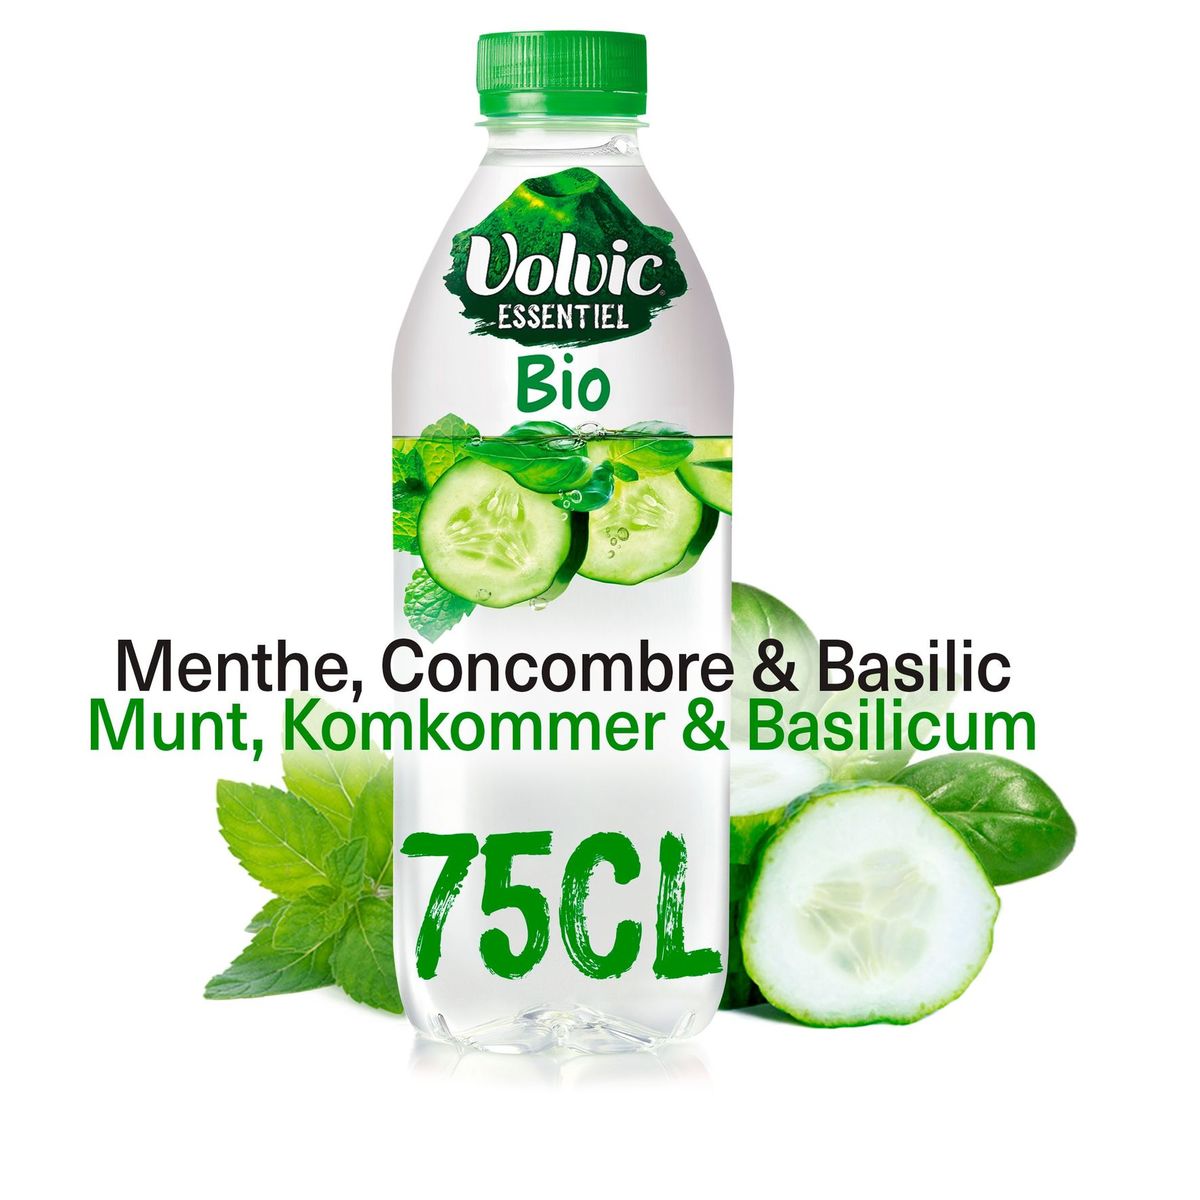 Volvic Essentiel Bio Munt, Komkommer & Basilicum 75 cl